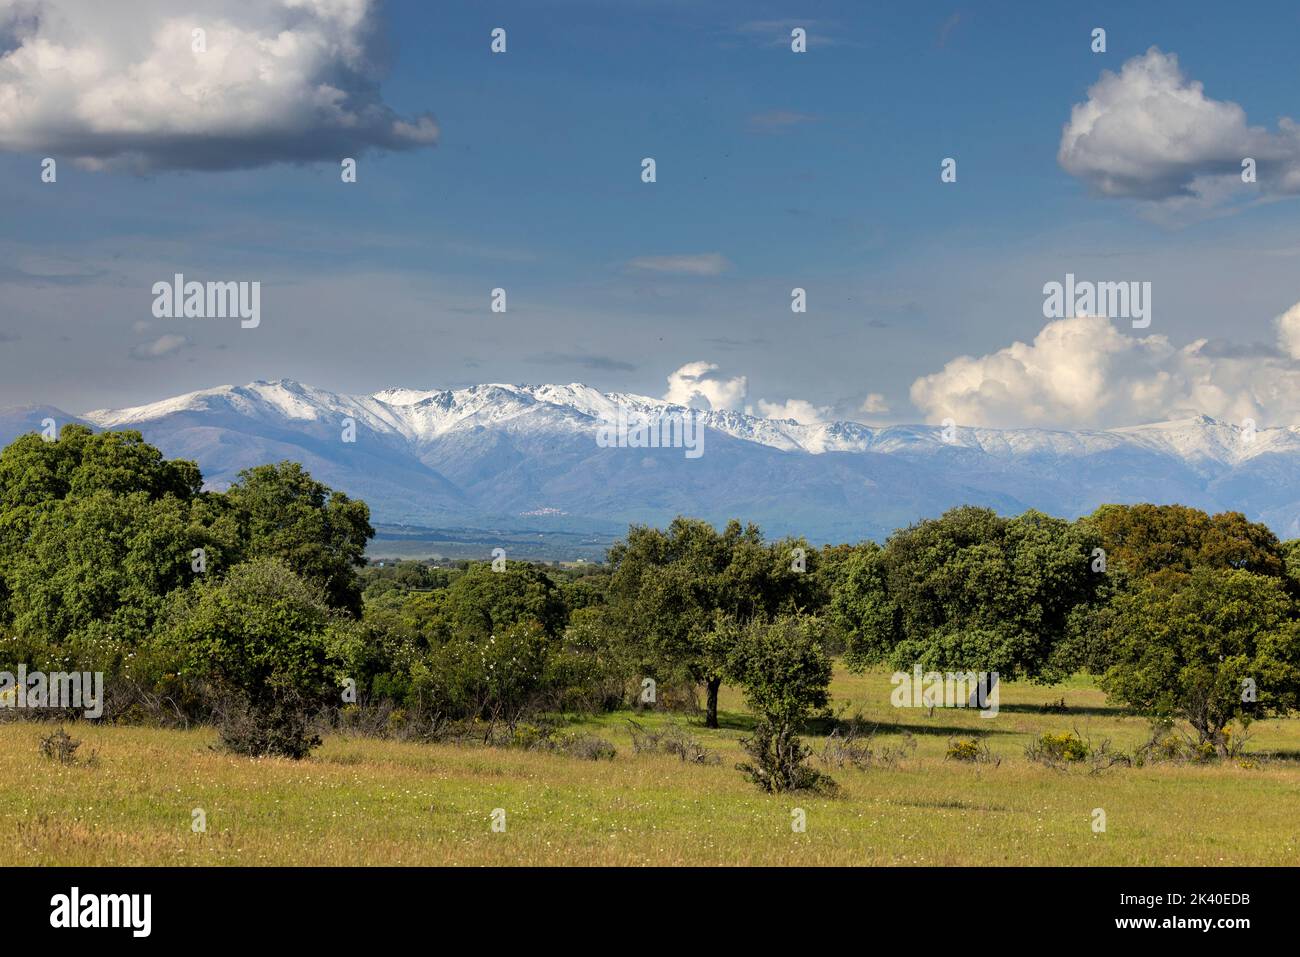 Sierra de Gredos, cimier de montagne enneigée, vue depuis le parc national de Monfrague près de la Herguijuela, Espagne, Estrémadure, Parc national de Monfrague Banque D'Images